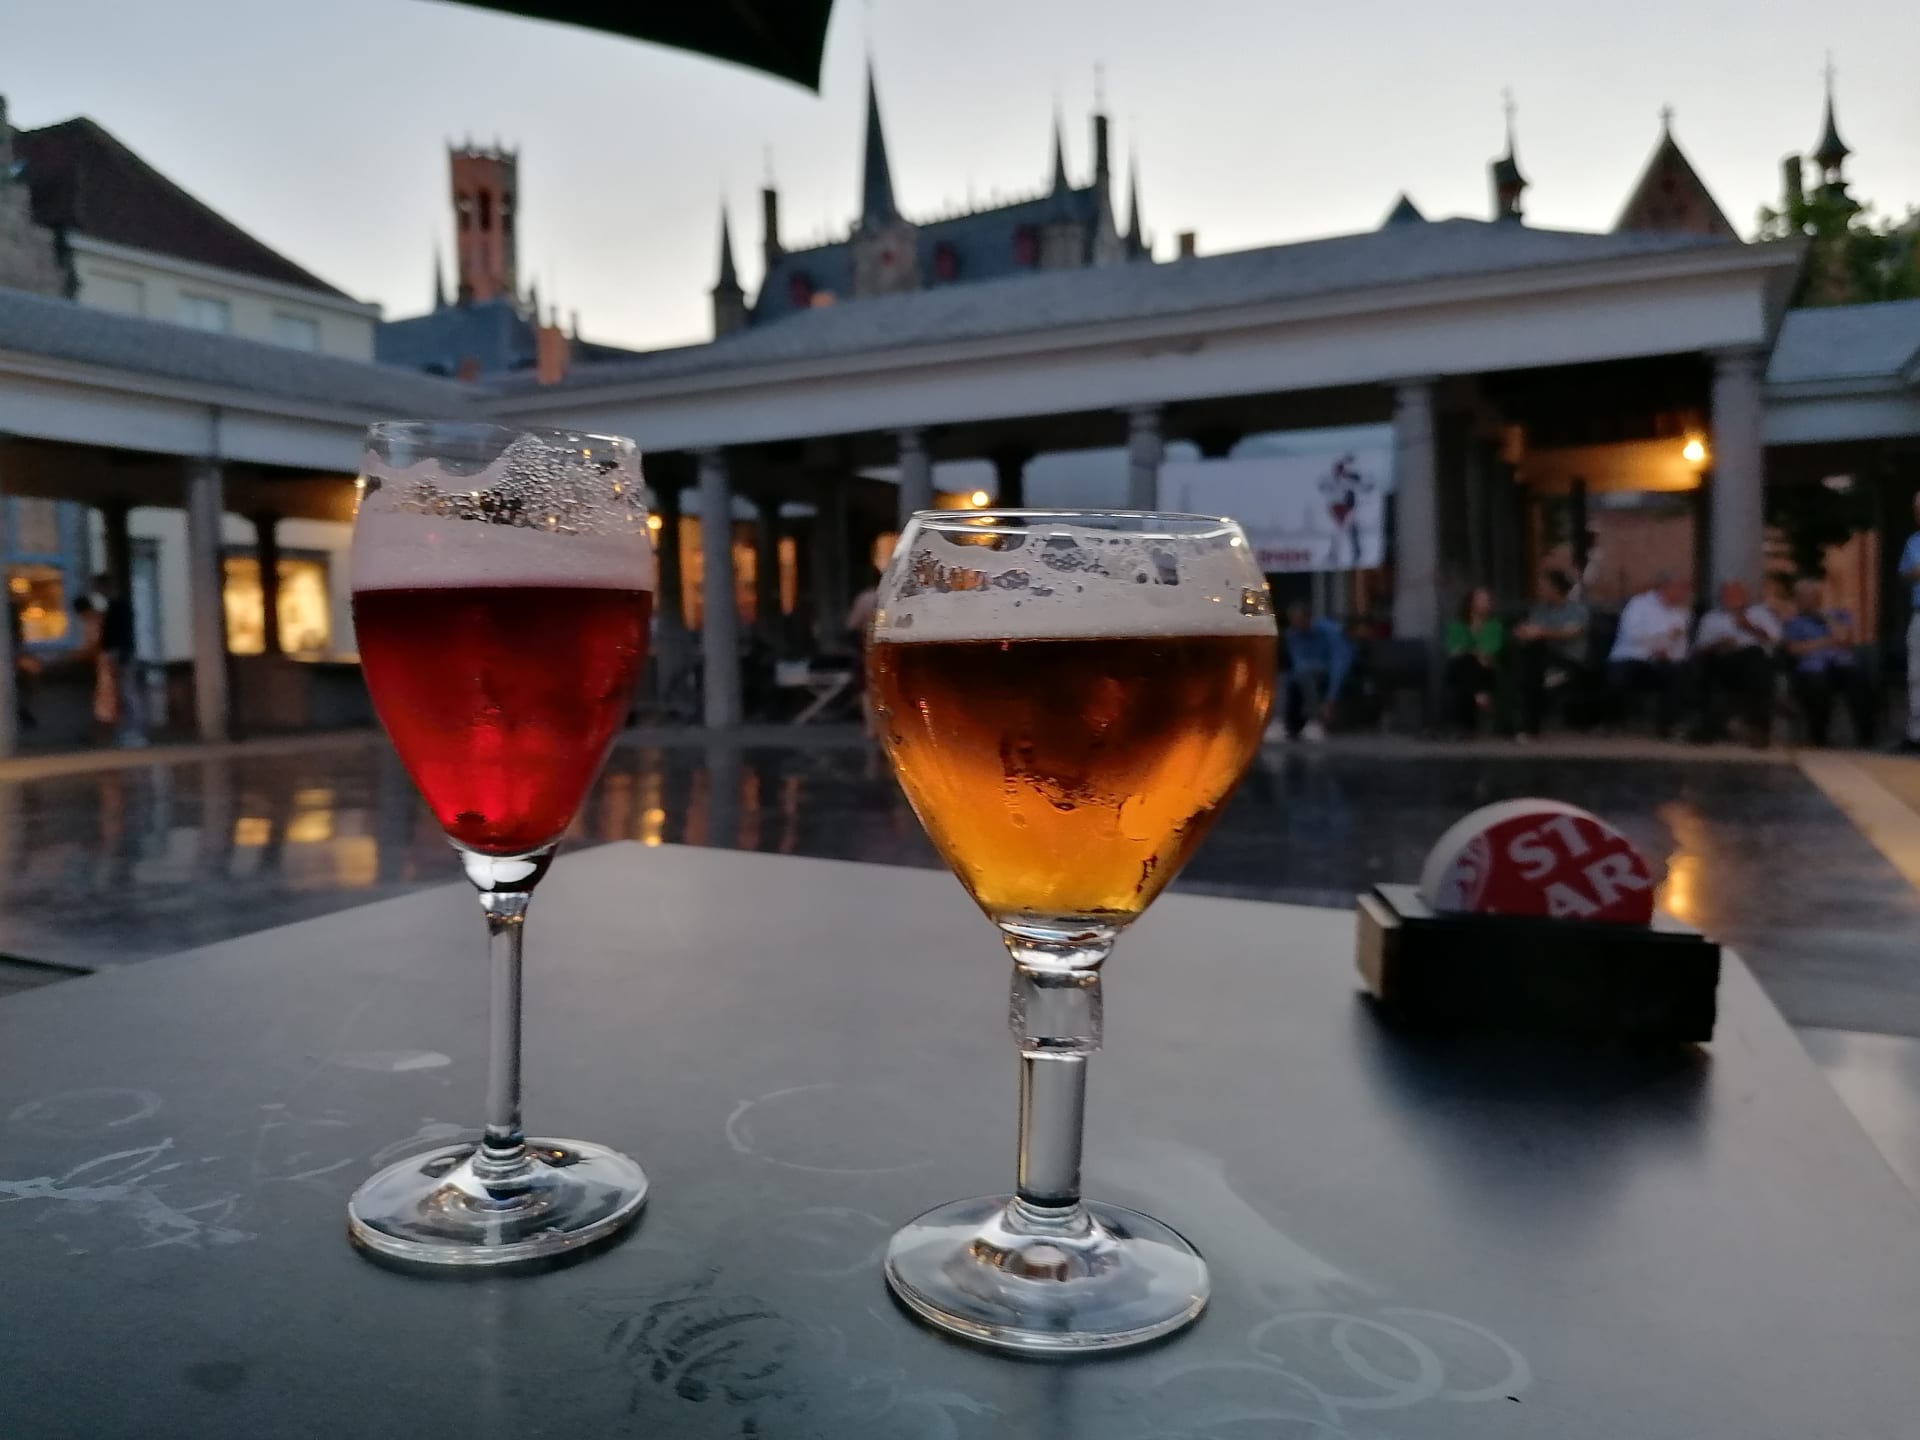 Bruggy v Belgii, památka UNESCO. Noční zastávka na trase z ČR do Velké Británie. Večerní pivo.